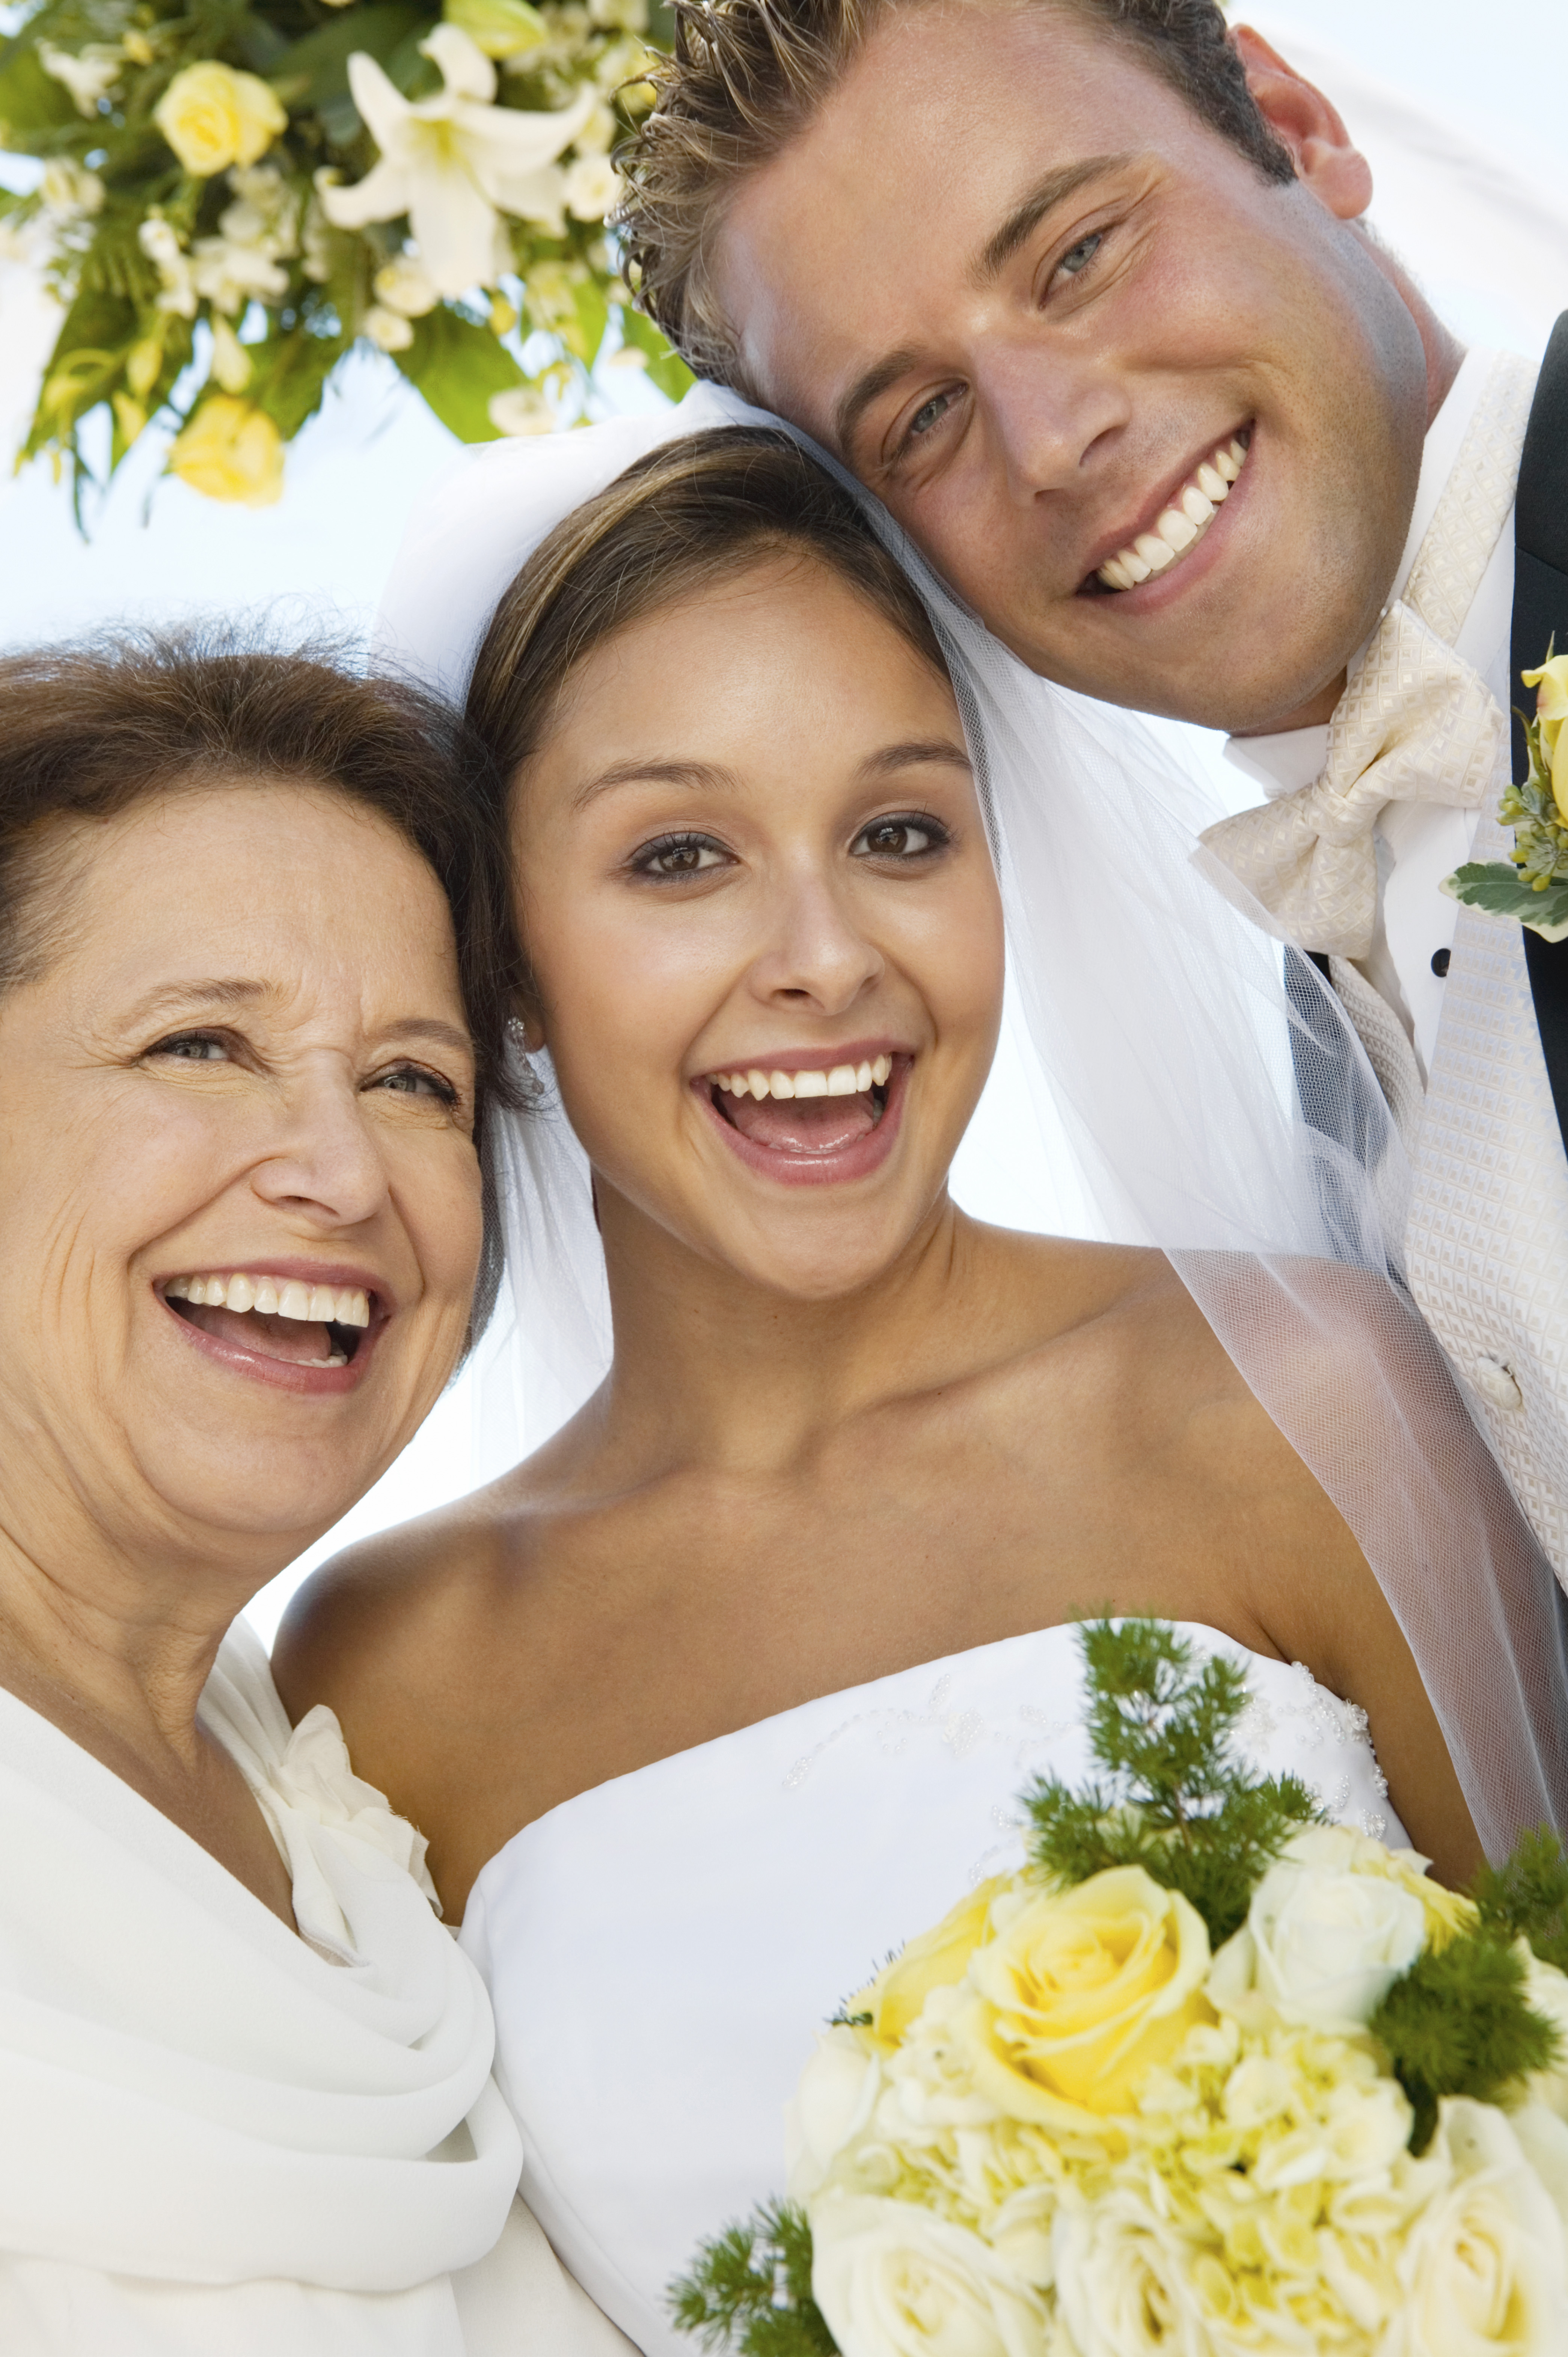 Une mariée et un marié avec leur mère le jour de leur mariage | Source : Shutterstock